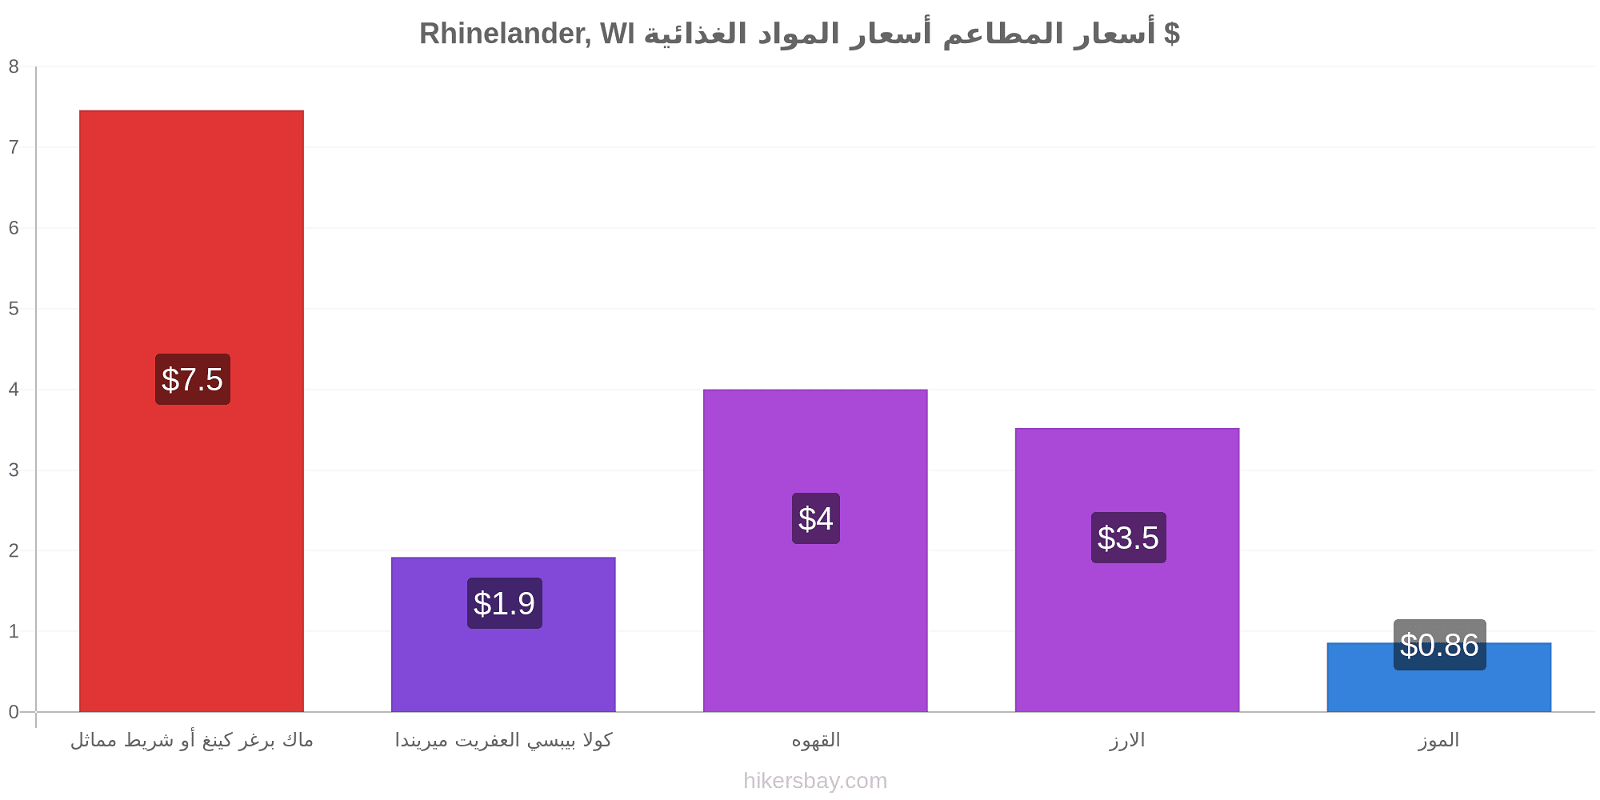 Rhinelander, WI تغييرات الأسعار hikersbay.com